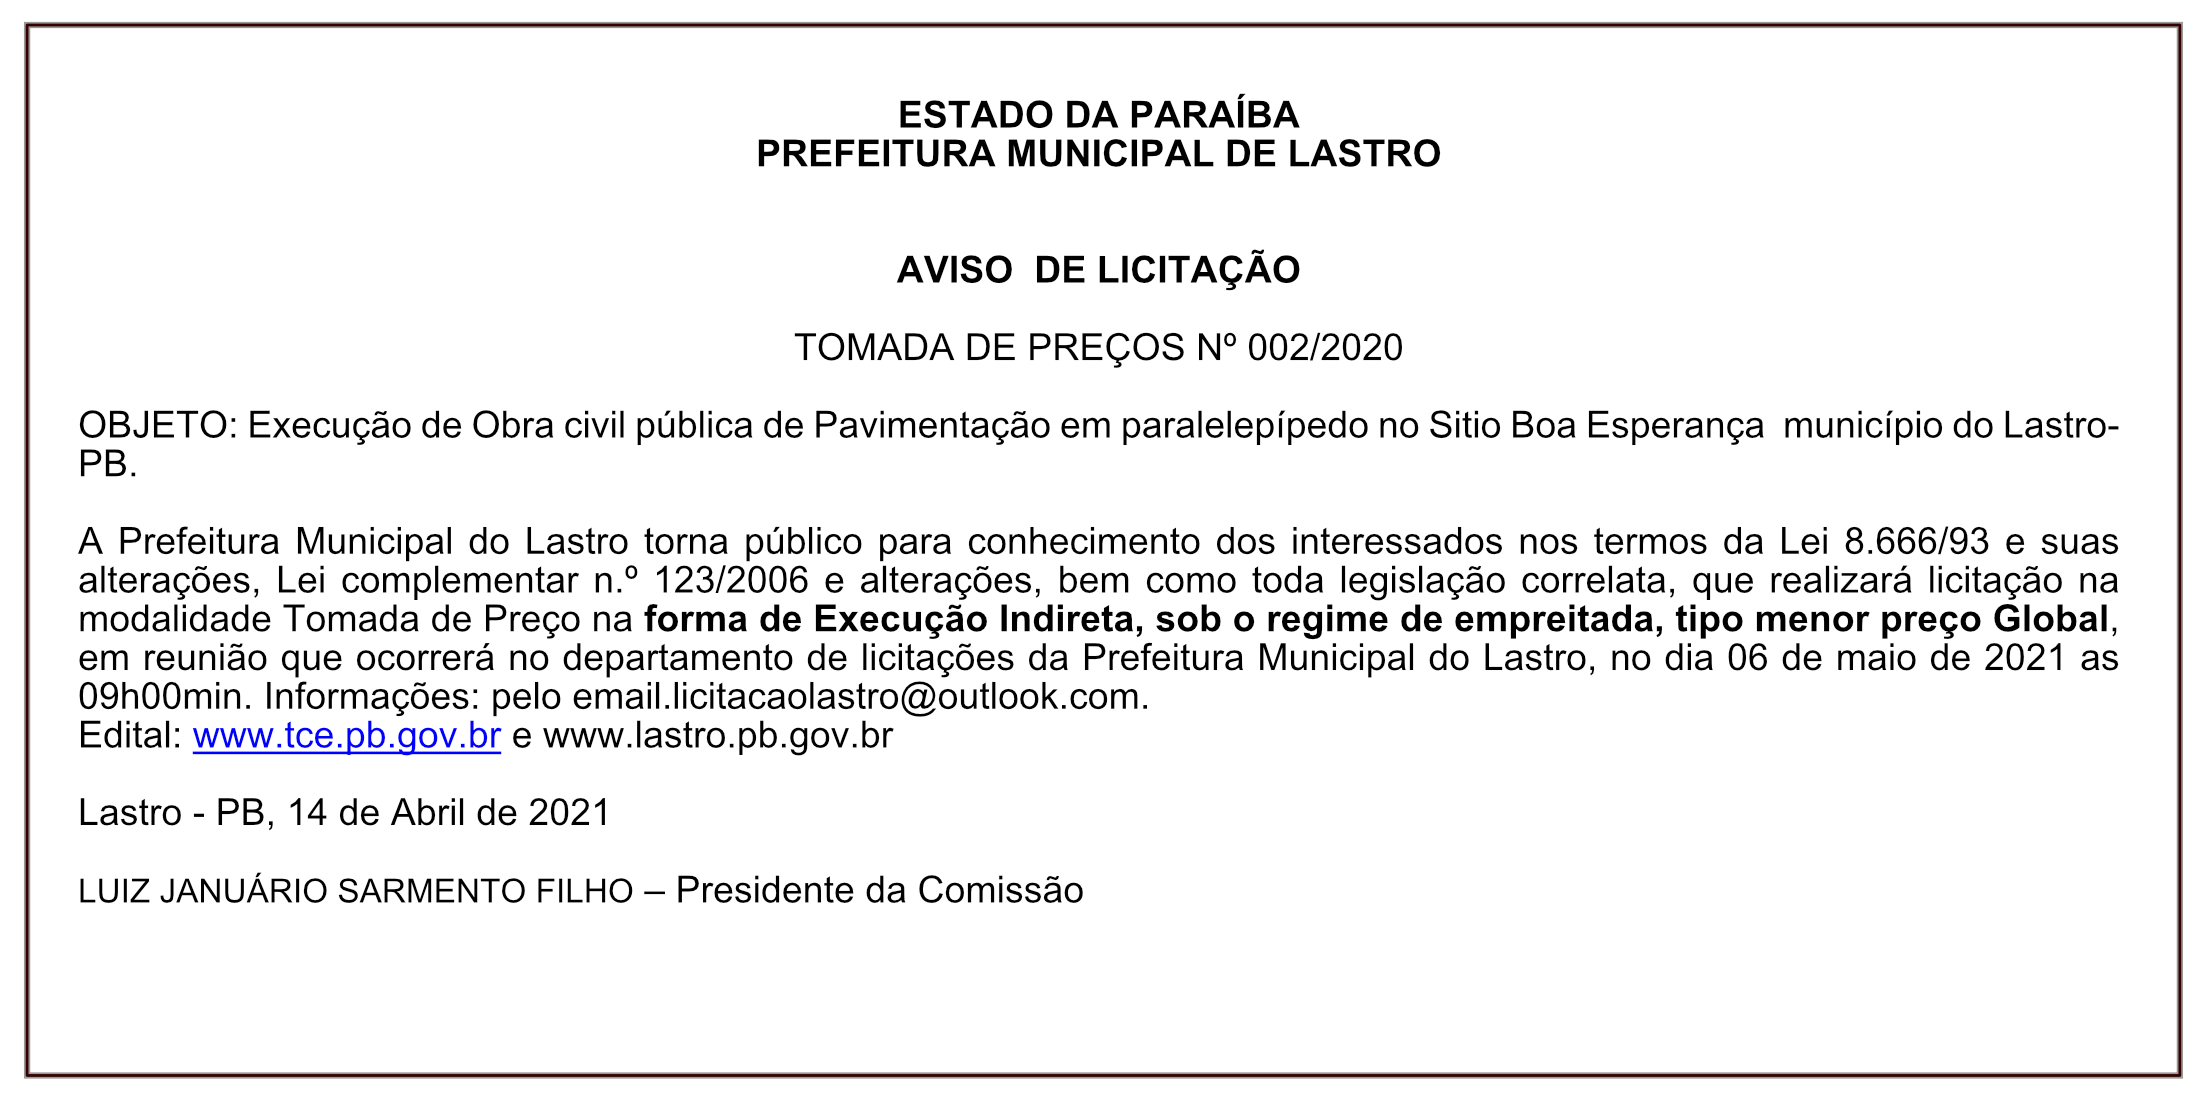 PREFEITURA MUNICIPAL DE LASTRO – AVISO DE LICITAÇÃO – TOMADA DE PREÇOS Nº 002/2020